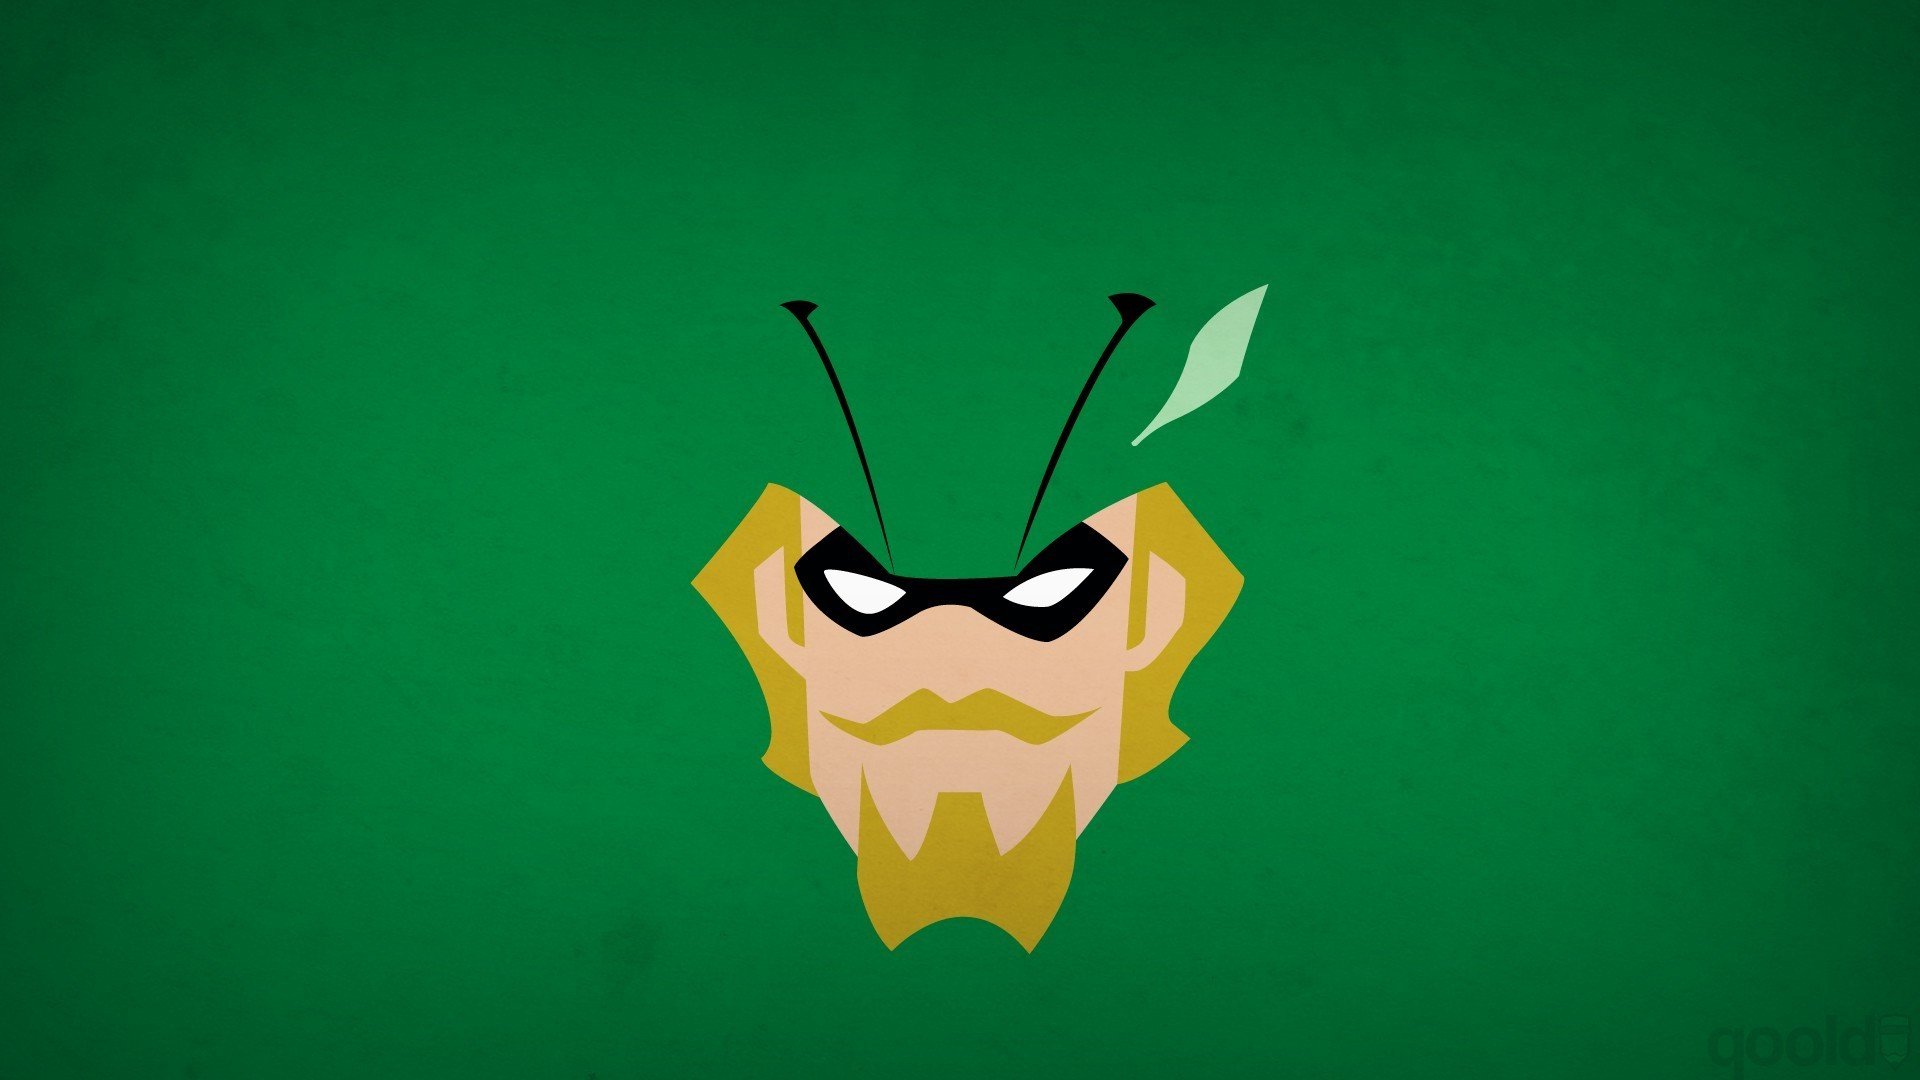 #Green Arrow, #minimalism, #DC Comics, #simple background, #Blo0p, # comics, #superhero, wallpaper HD Wallpaper